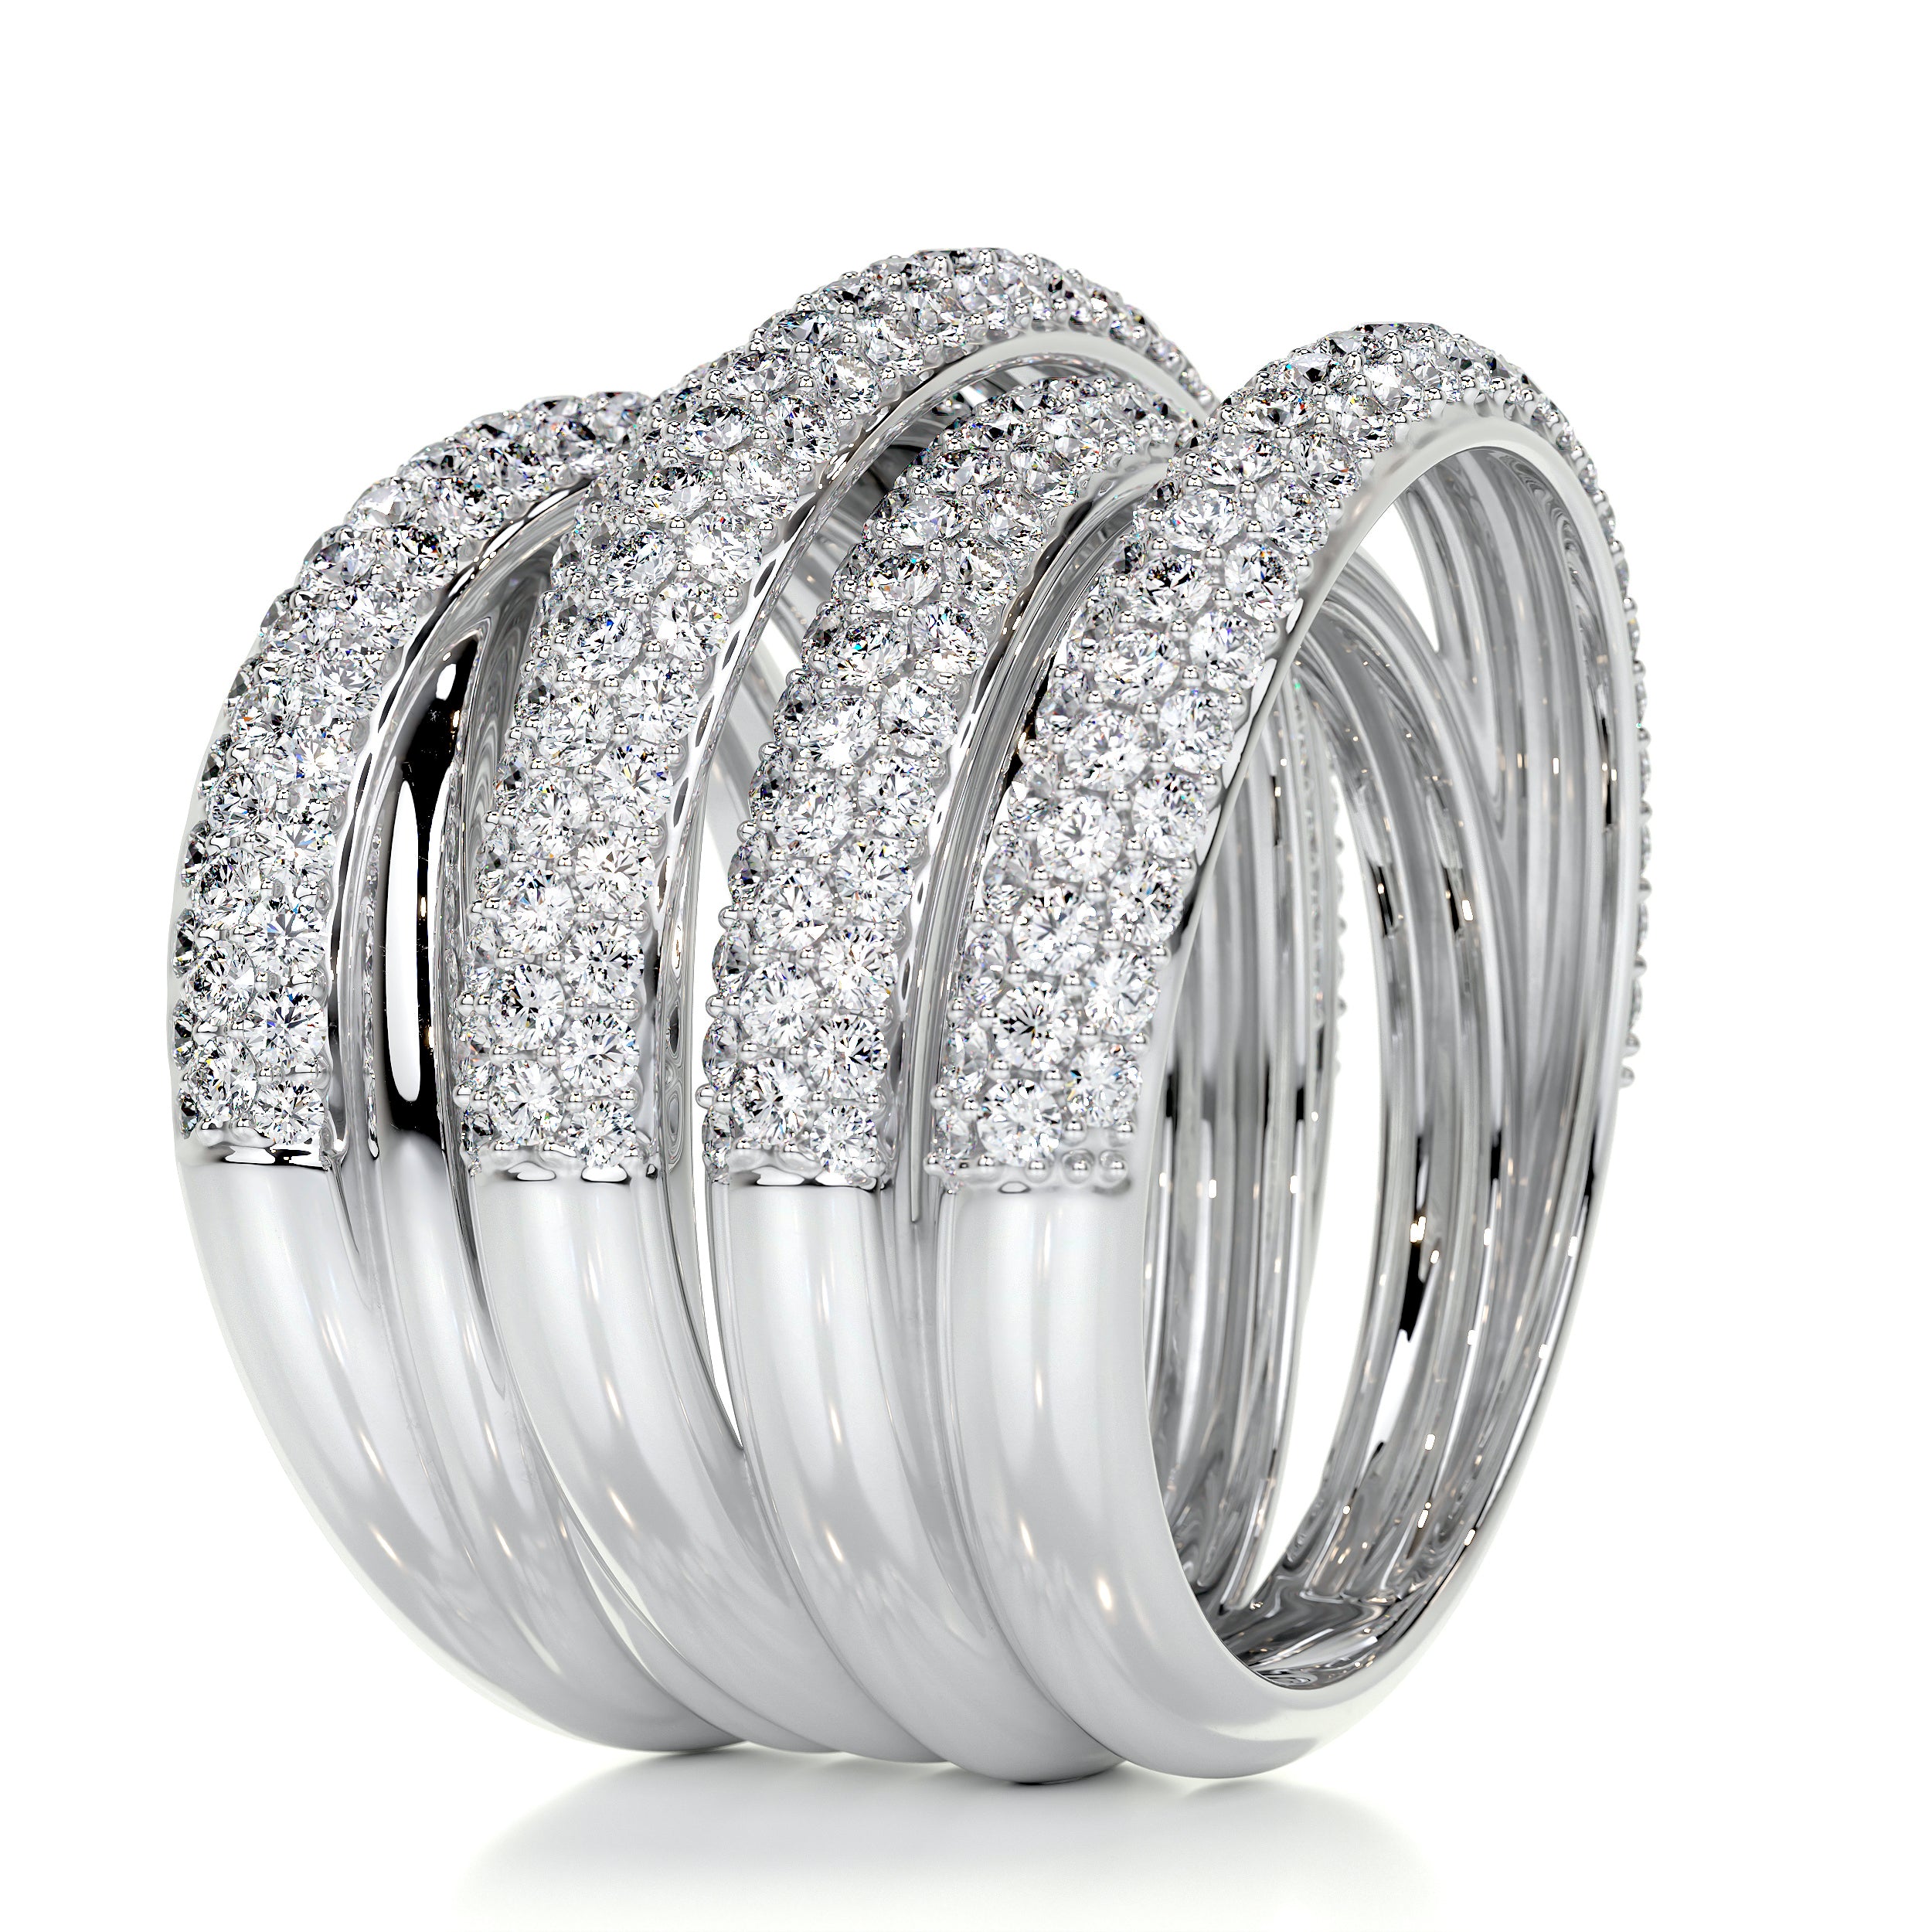 Aurora Diamond Wedding Ring   (3 Carat) -14K White Gold